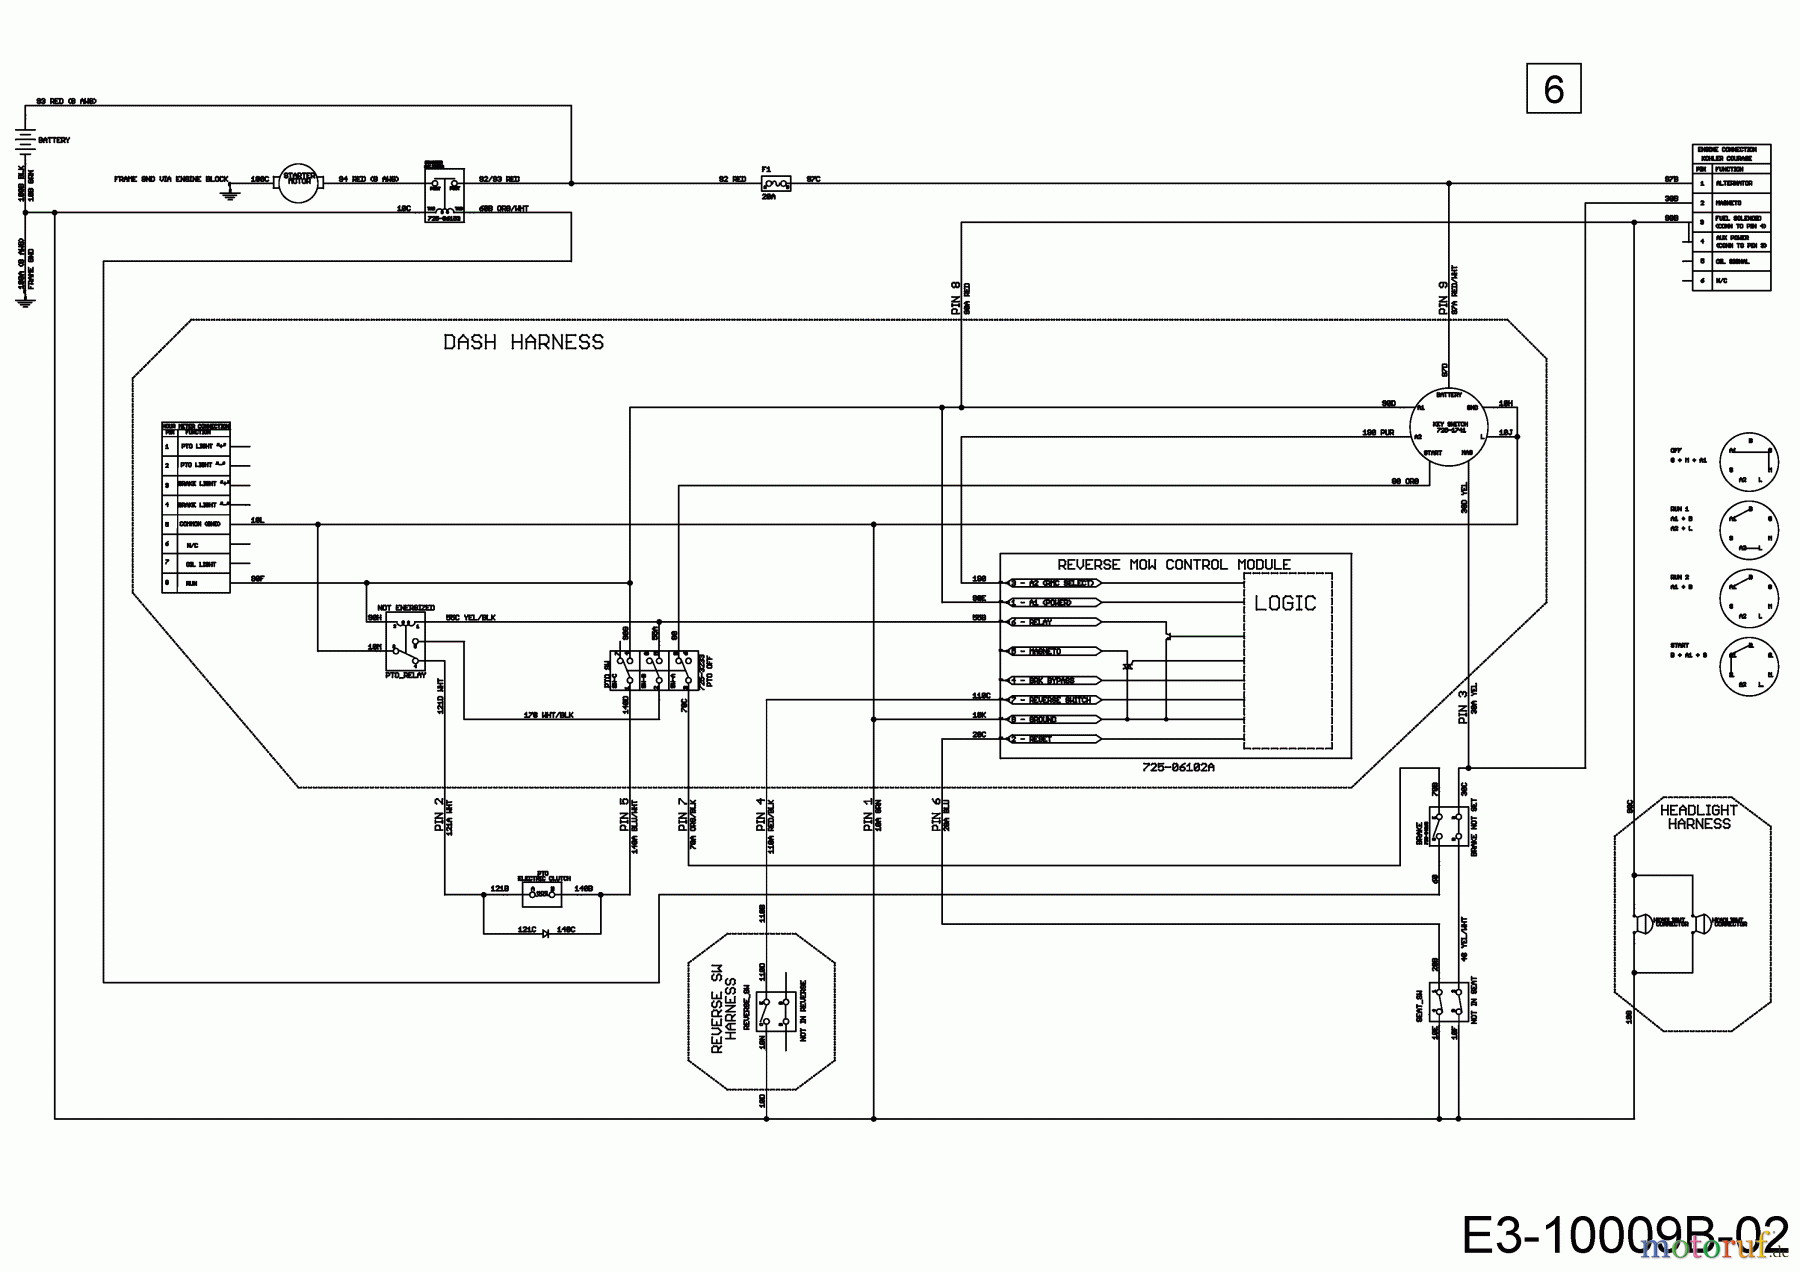  Cub Cadet Lawn tractors XT1 OS107 13A8A1CS603  (2018) Main wiring diagram